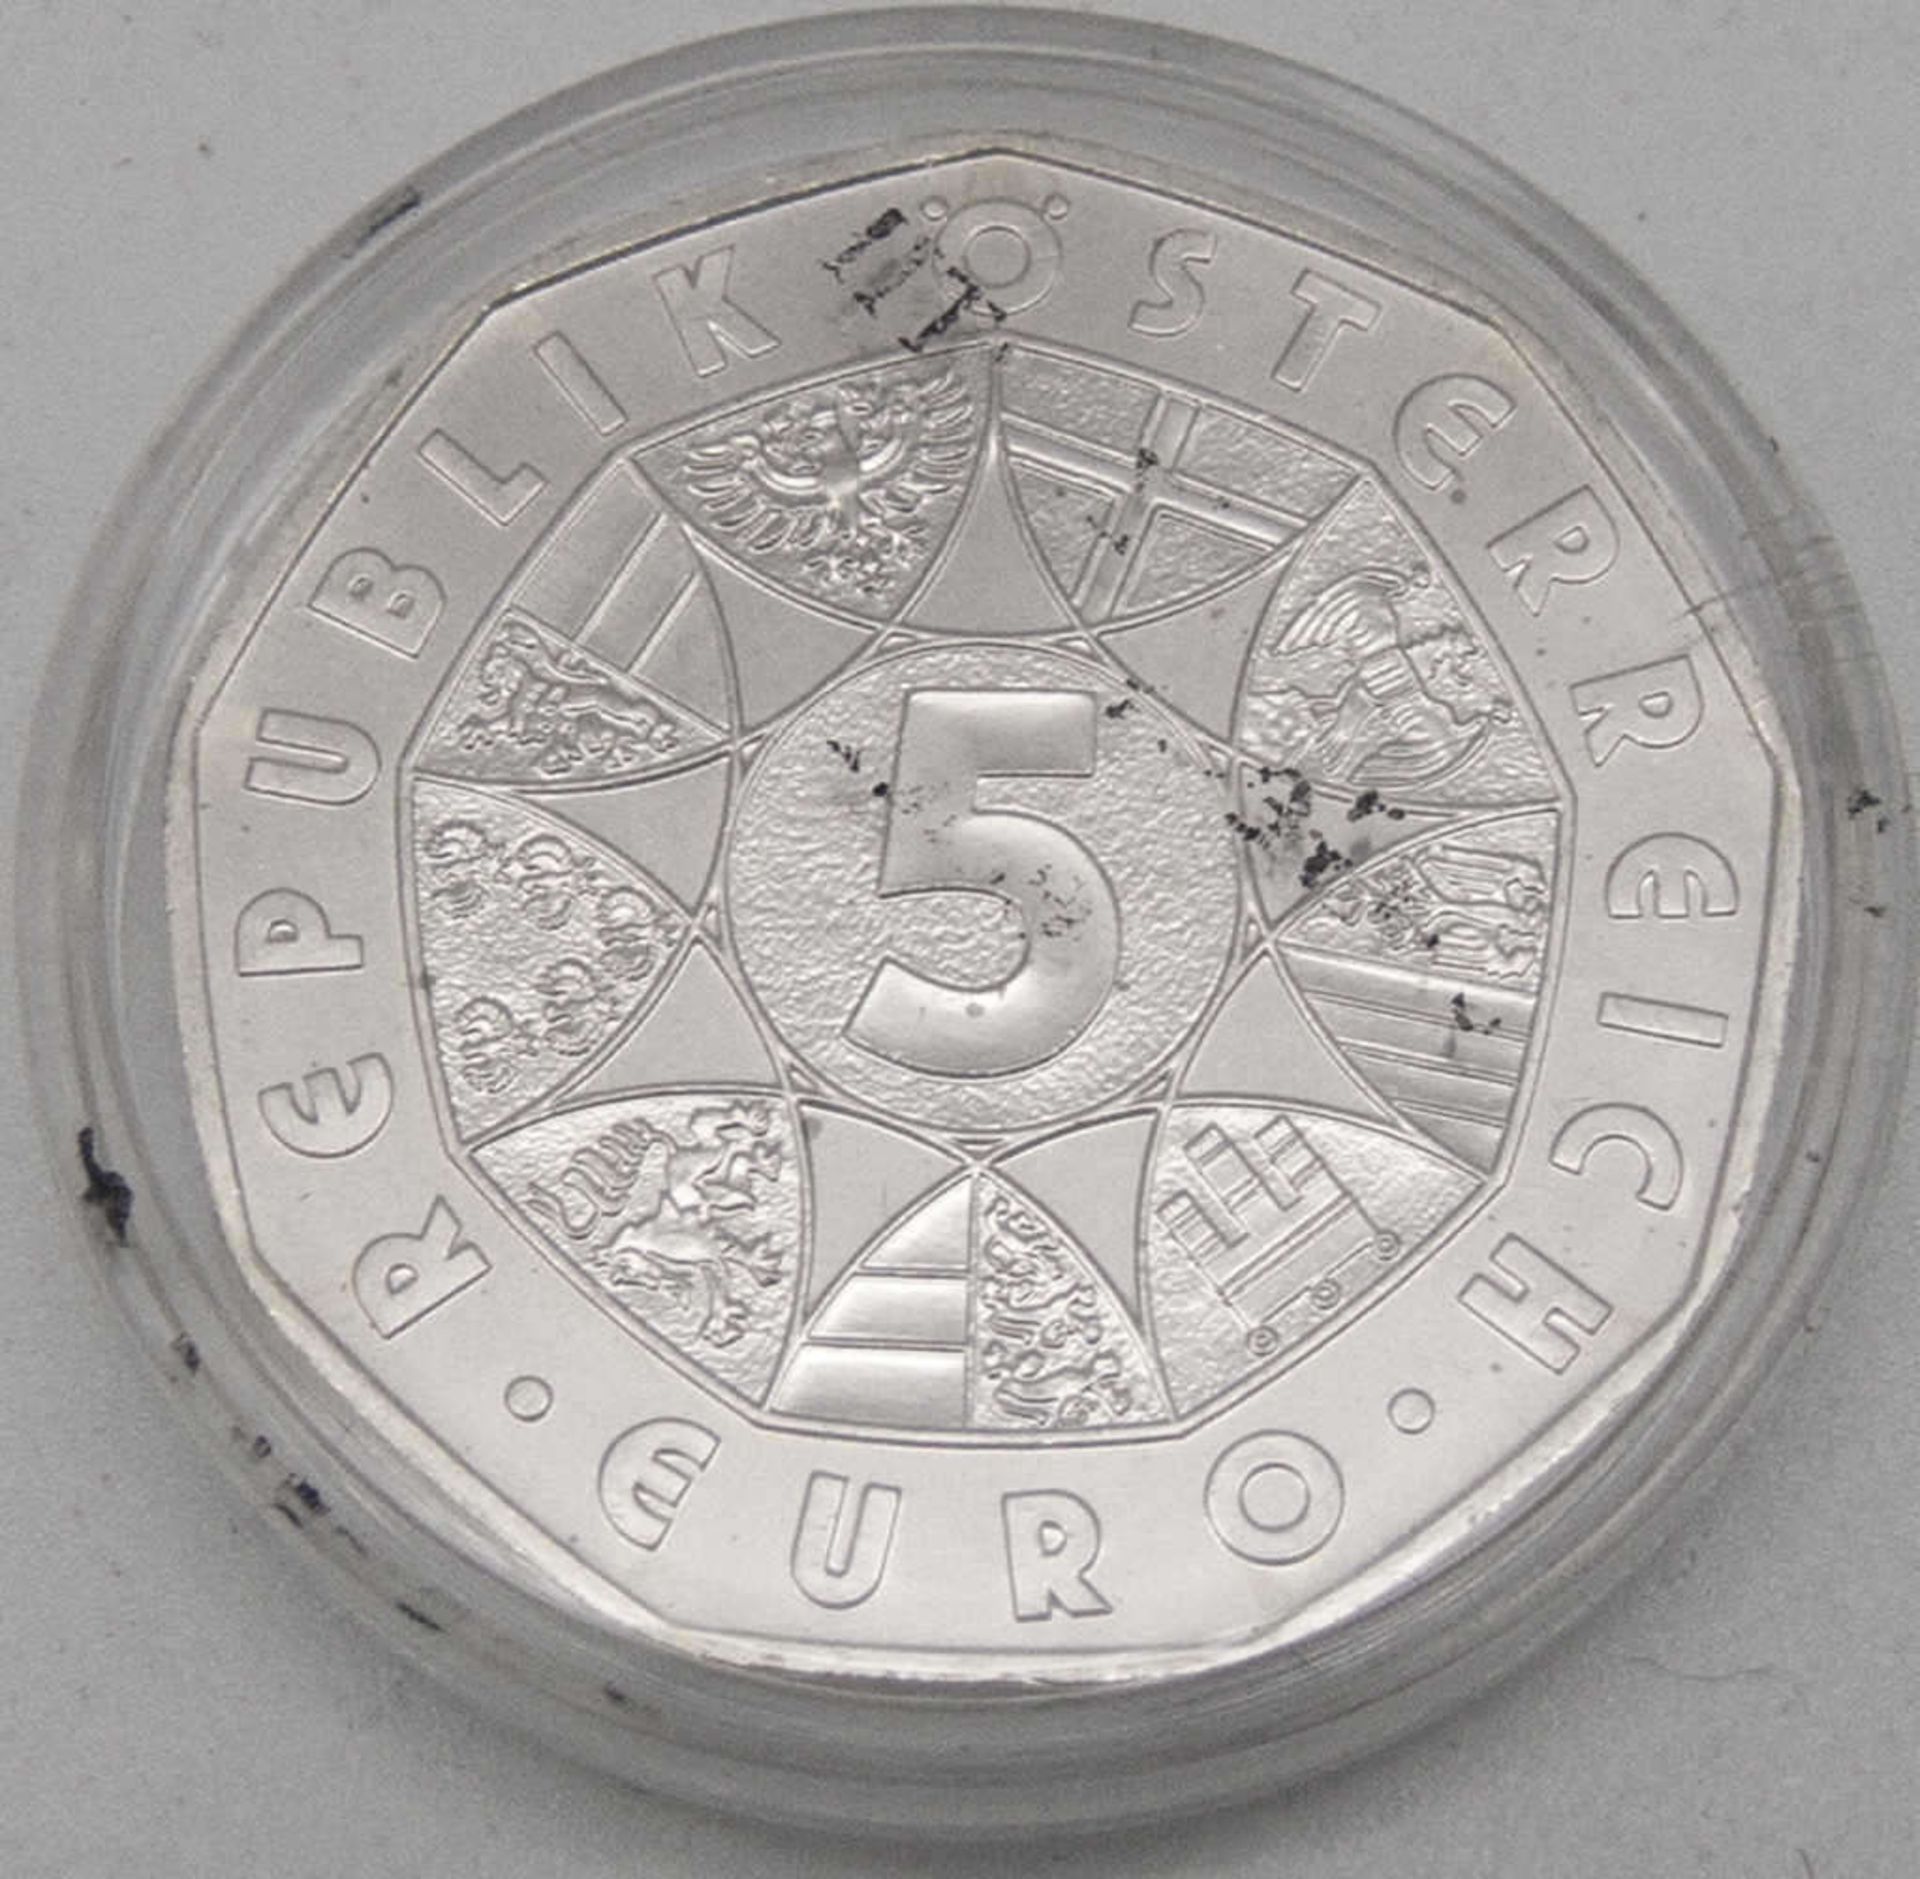 Österreich 2005, 5.- Euro - Silbermünze "Beethoven". Erhaltung: stgl. - Bild 2 aus 2